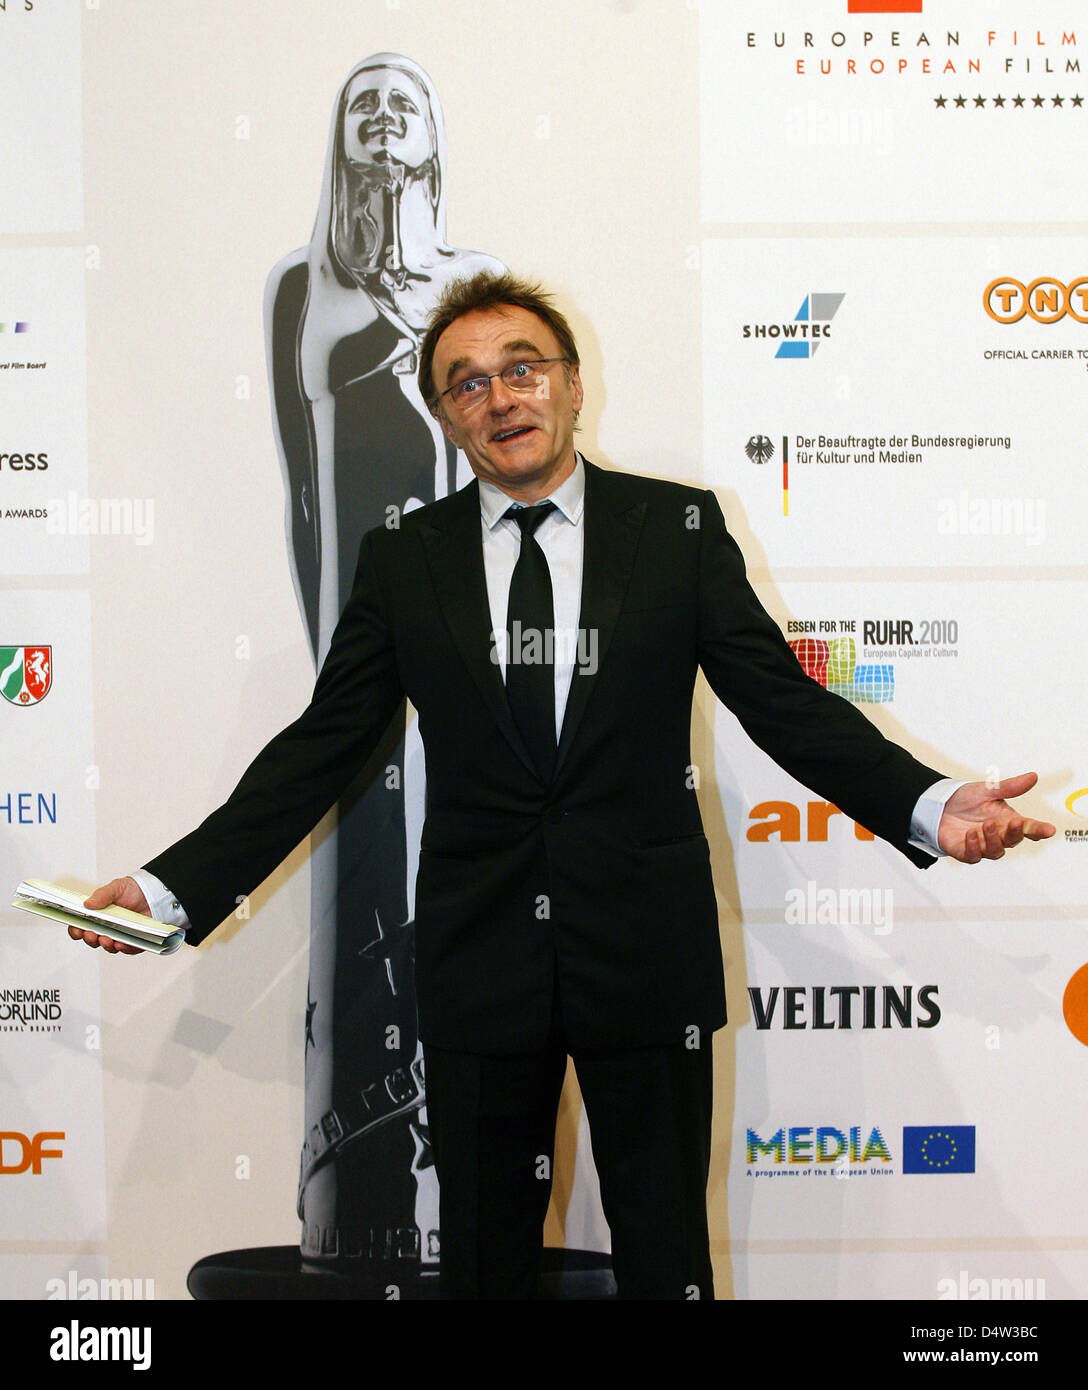 Danny Boyle directeur britannique assiste à la cérémonie de remise des prix pour les European Film Awards 2009 à 'Jahrhunderthalle' à Bochum, Allemagne, 12 décembre 2009. L'European Film Award, qui est souvent appelé l'Oscar, est décerné chaque année dans 16 catégories par la European Film Academy. Photo : Roland Weihrauch Banque D'Images